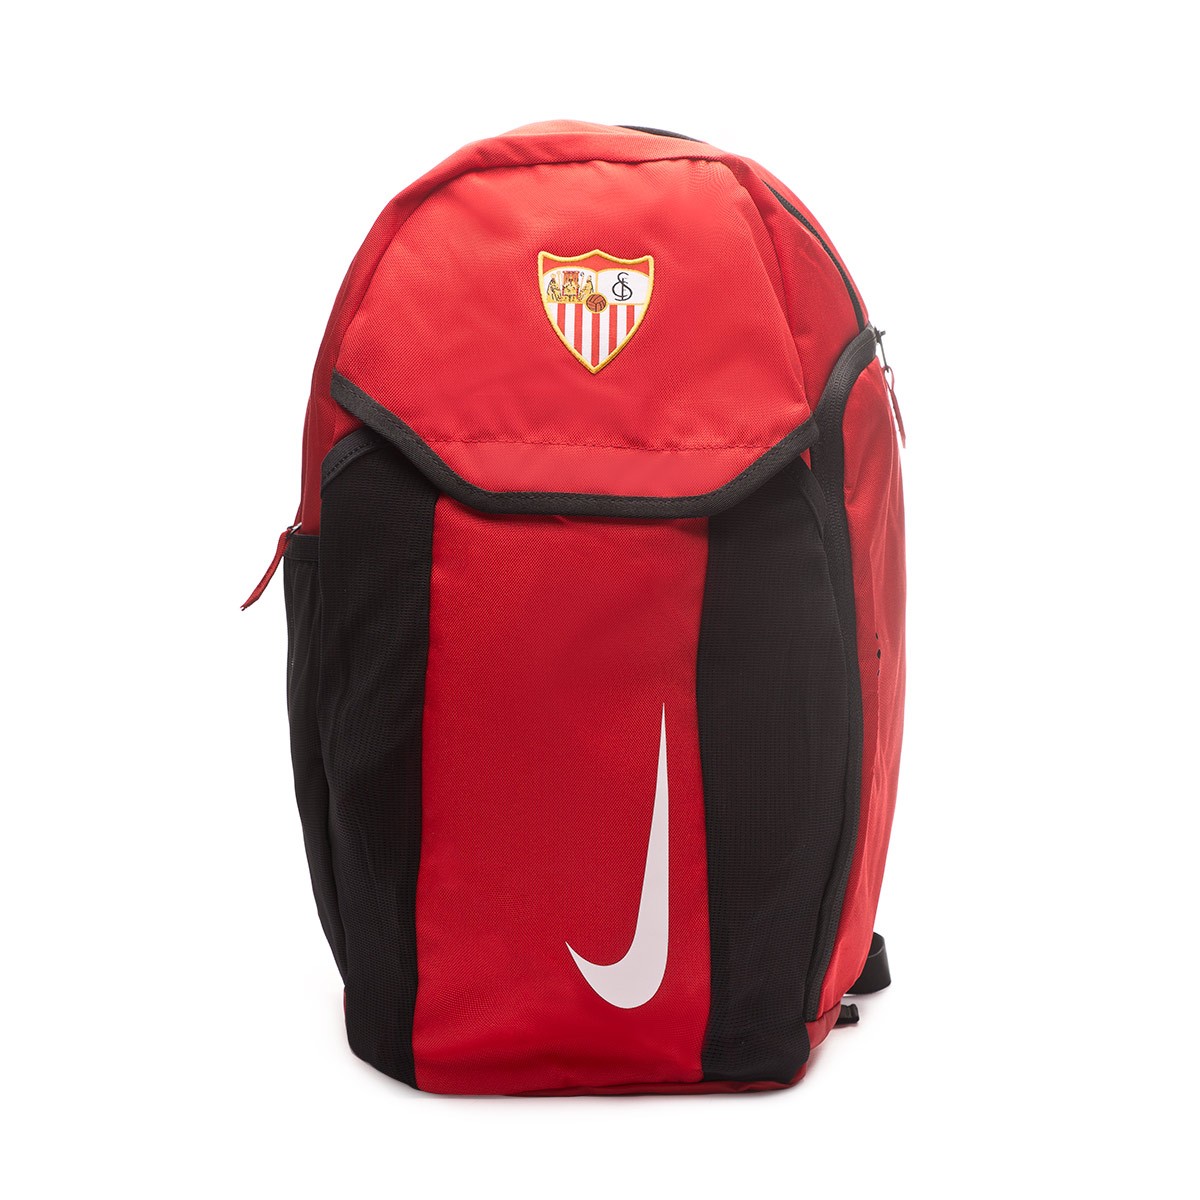 Tienda Oficial Nike En Sevilla Sale Online, 57% | www.colegiogamarra.com